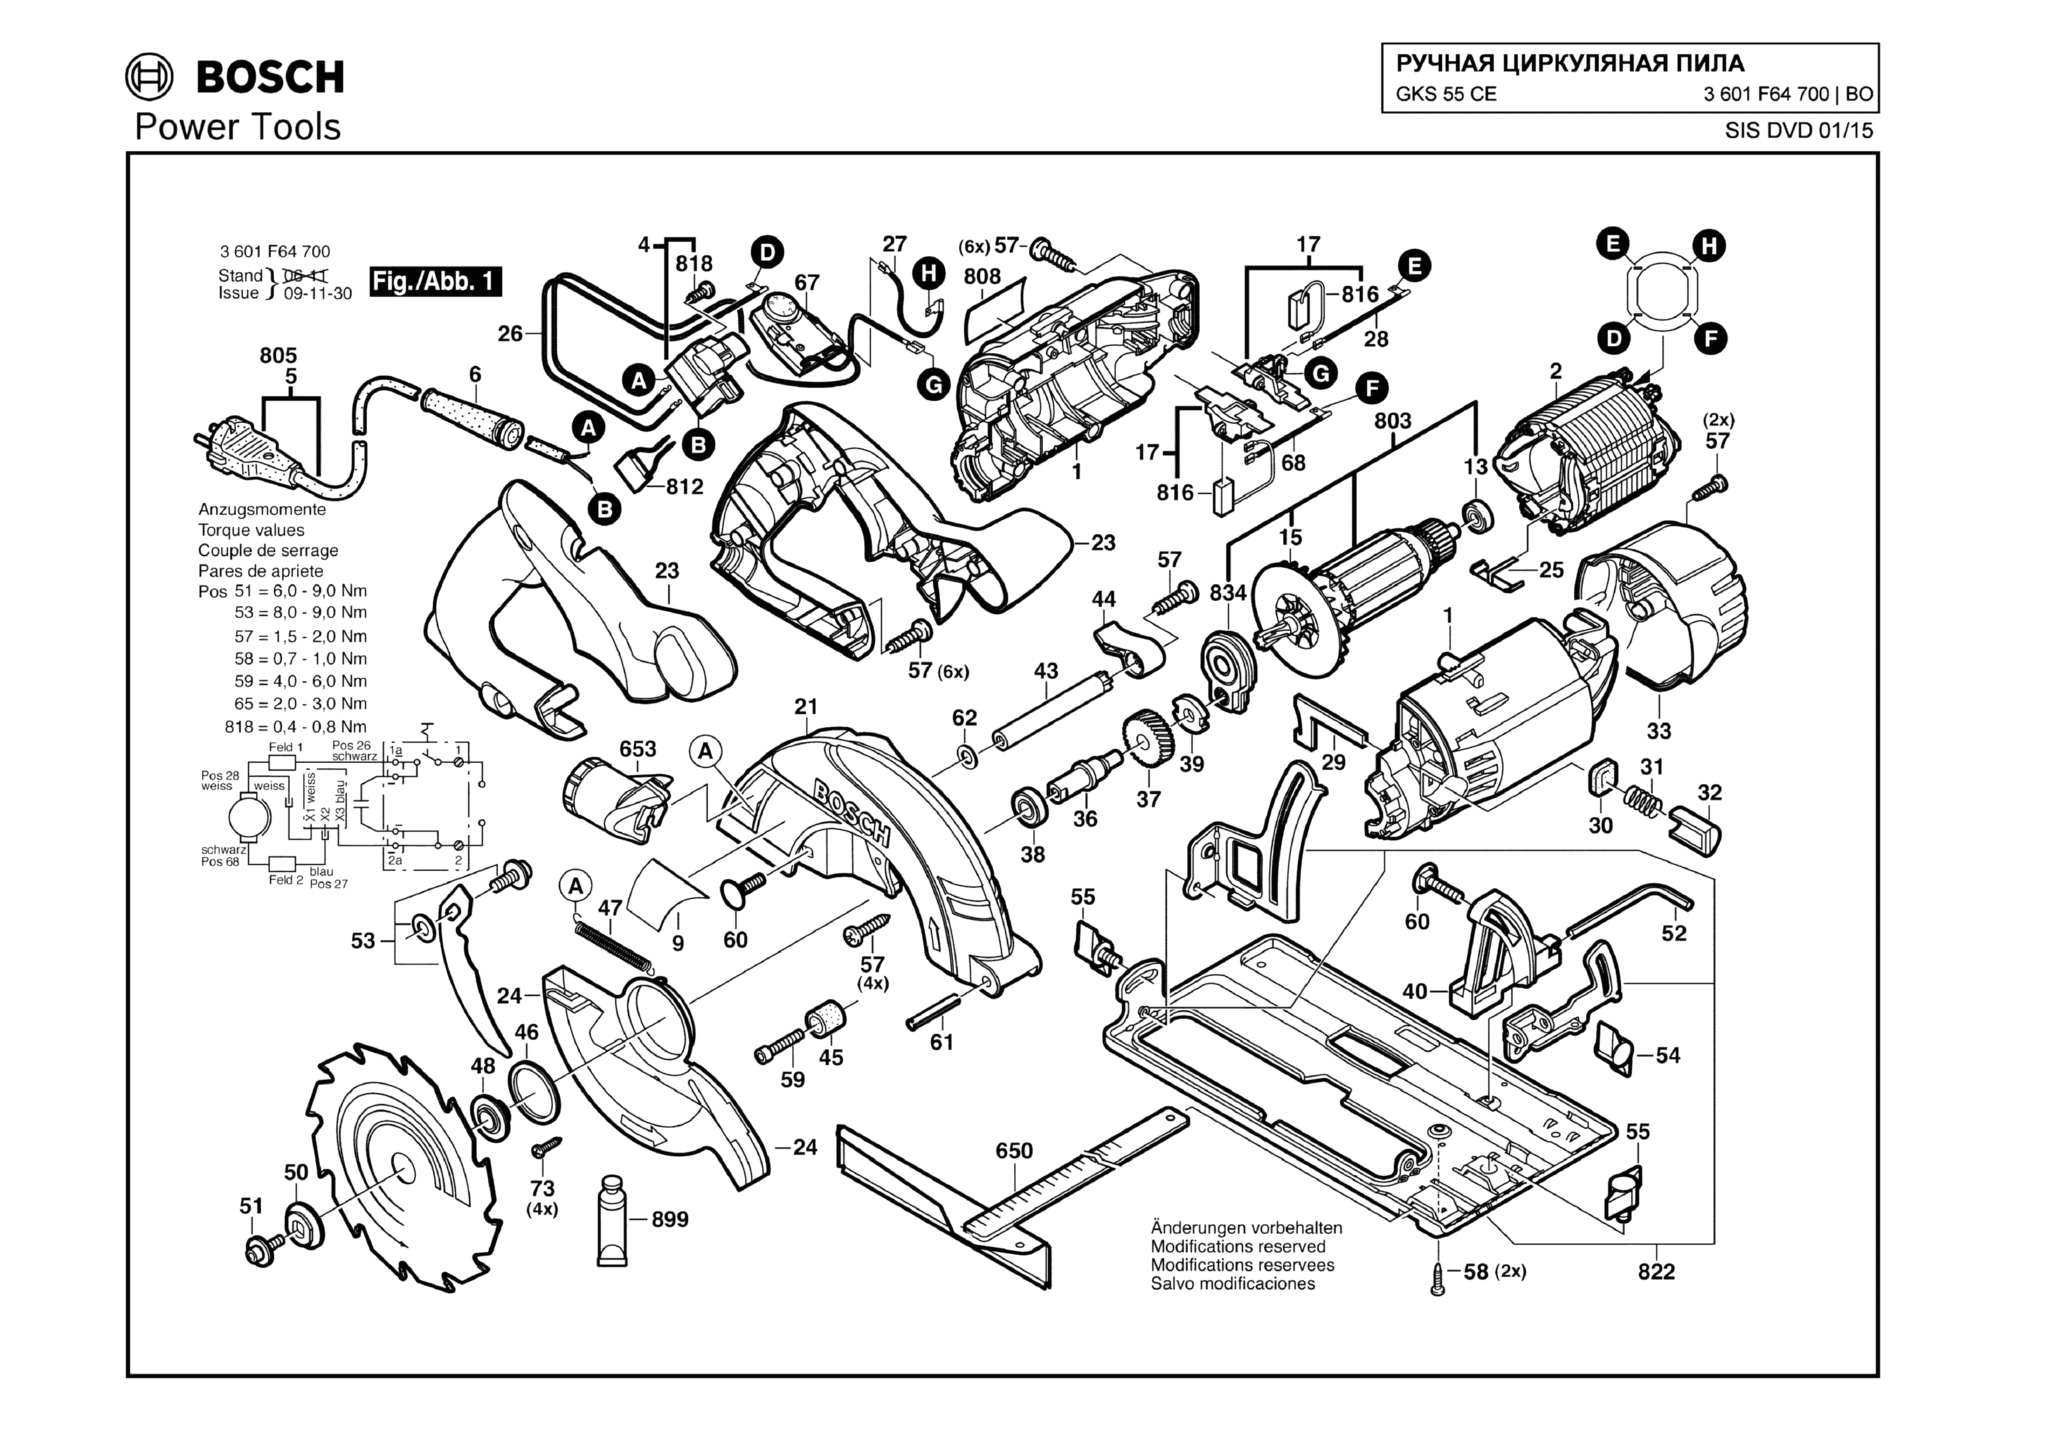 Запчасти, схема и деталировка Bosch GKS 55 CE (ТИП 3601F64700)